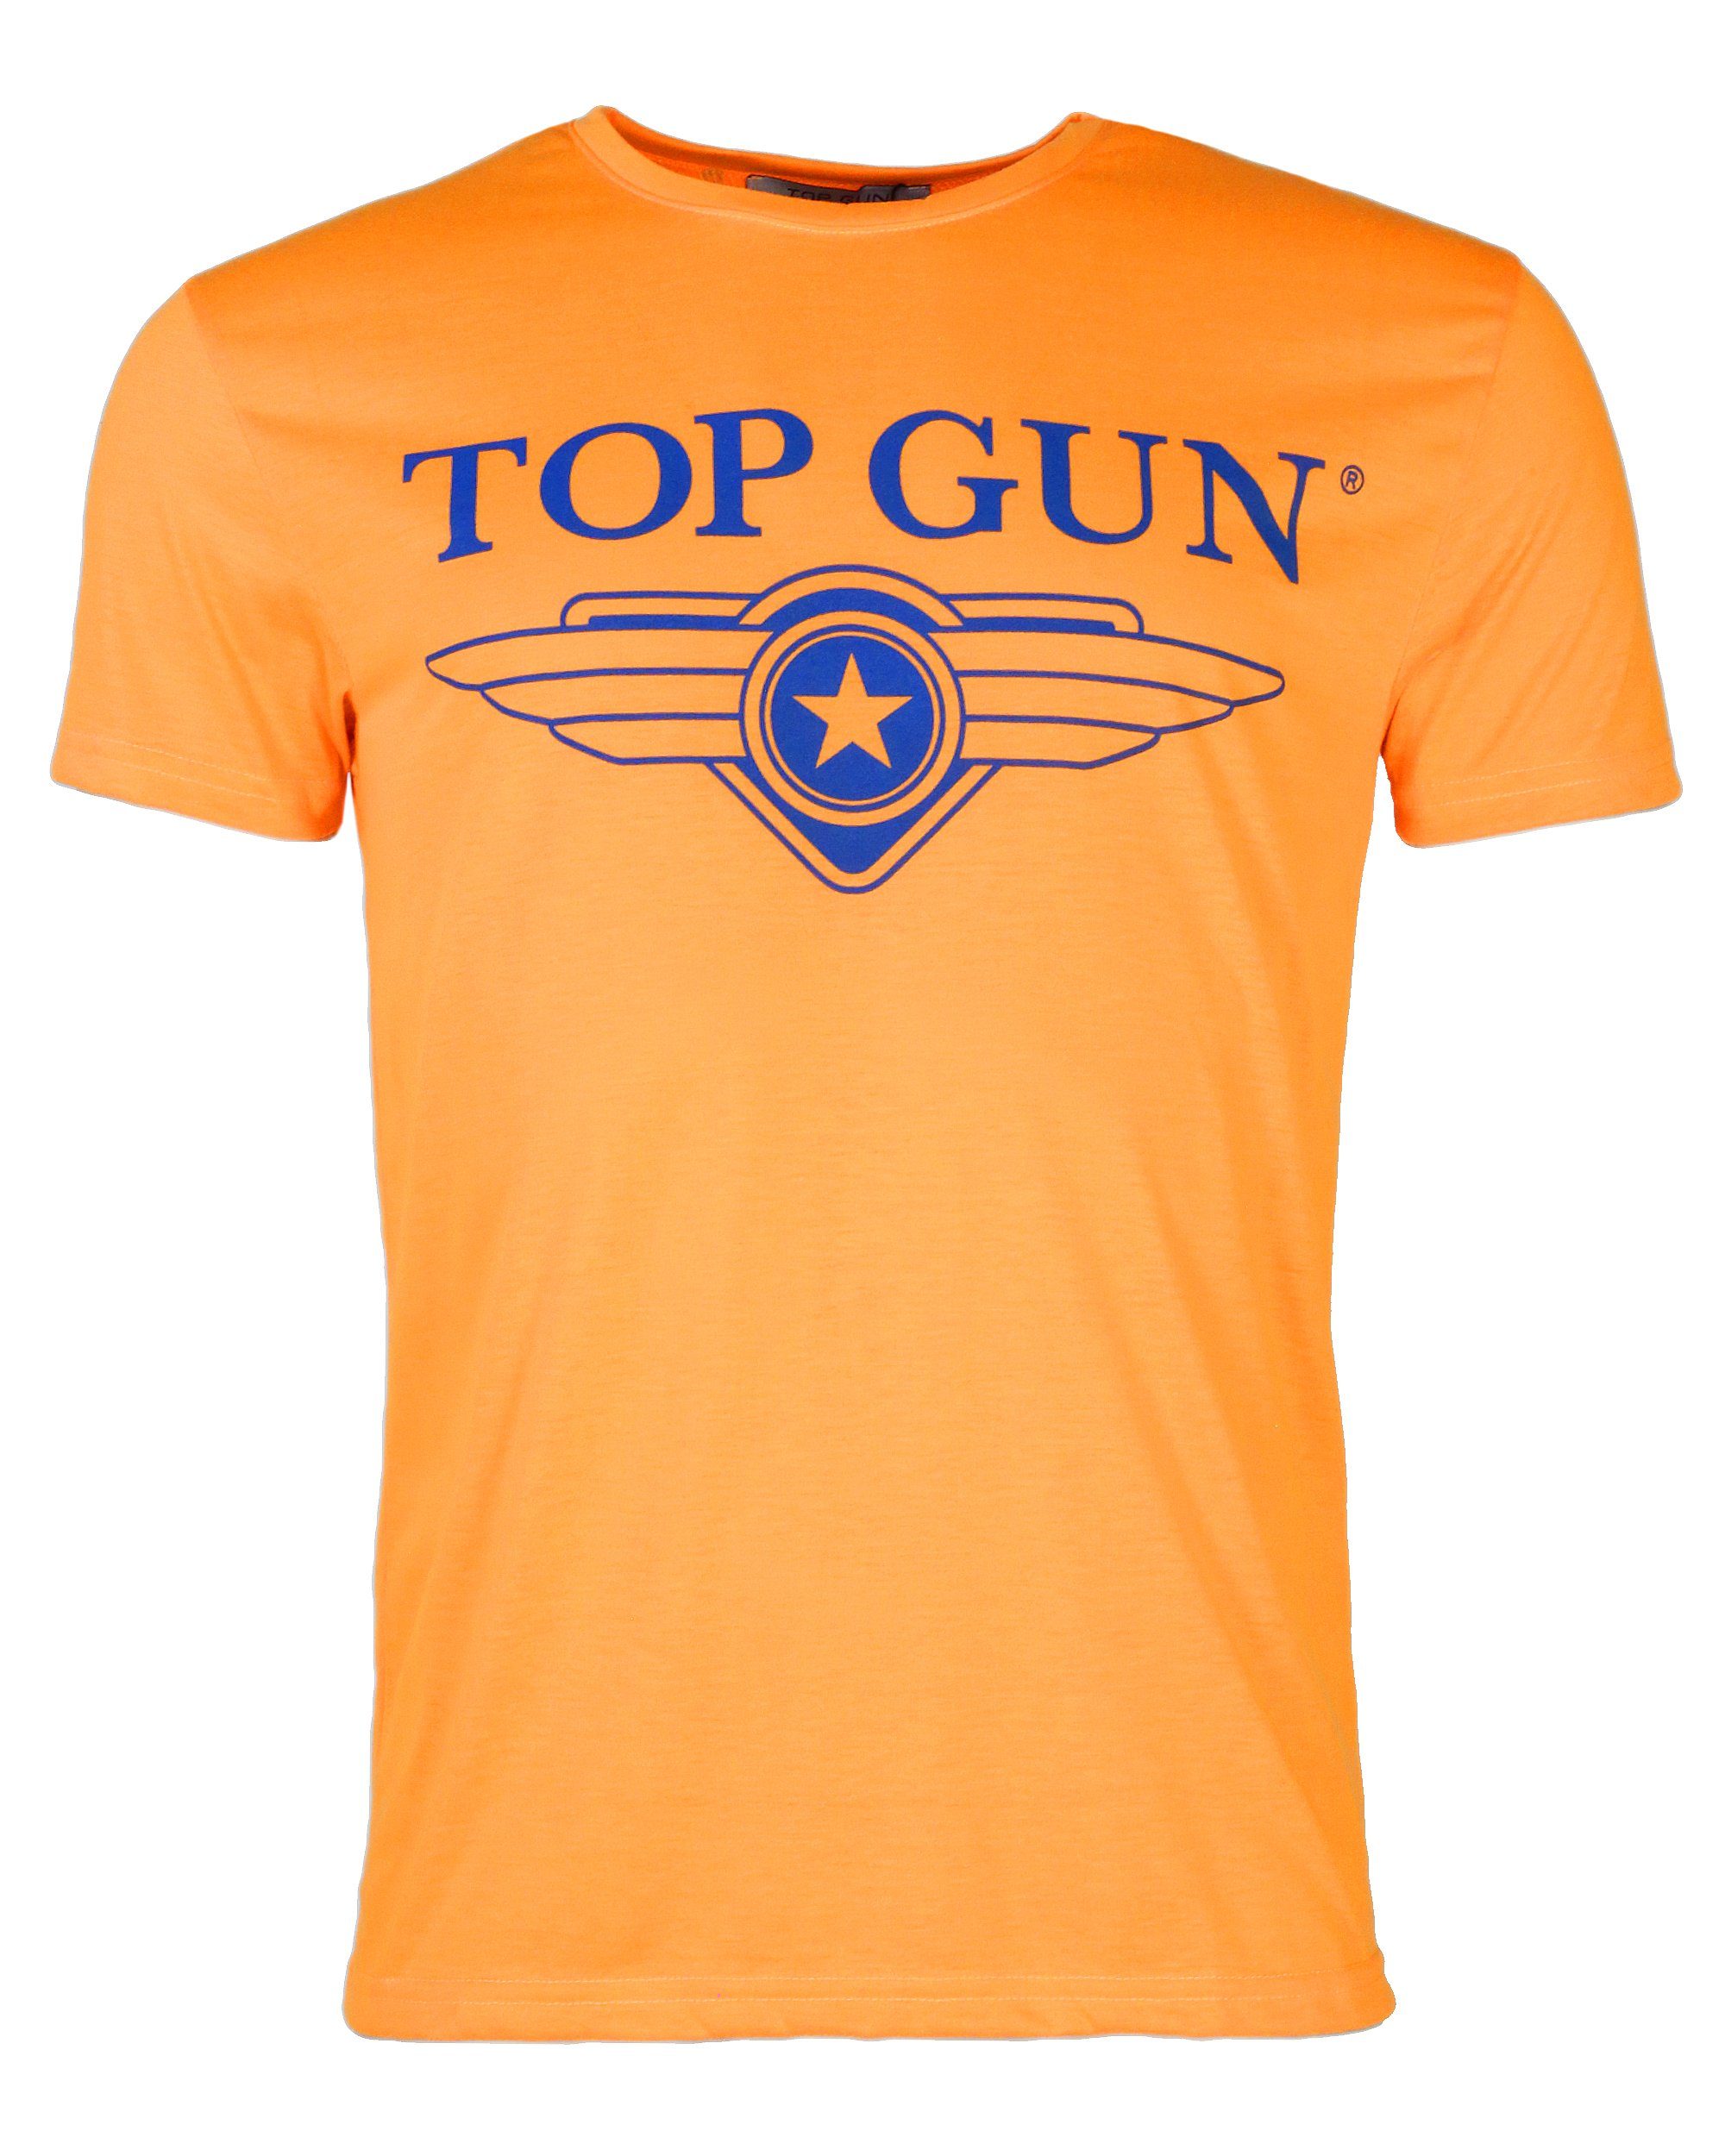 GUN T-Shirt TOP TG20192062 orange Radiate